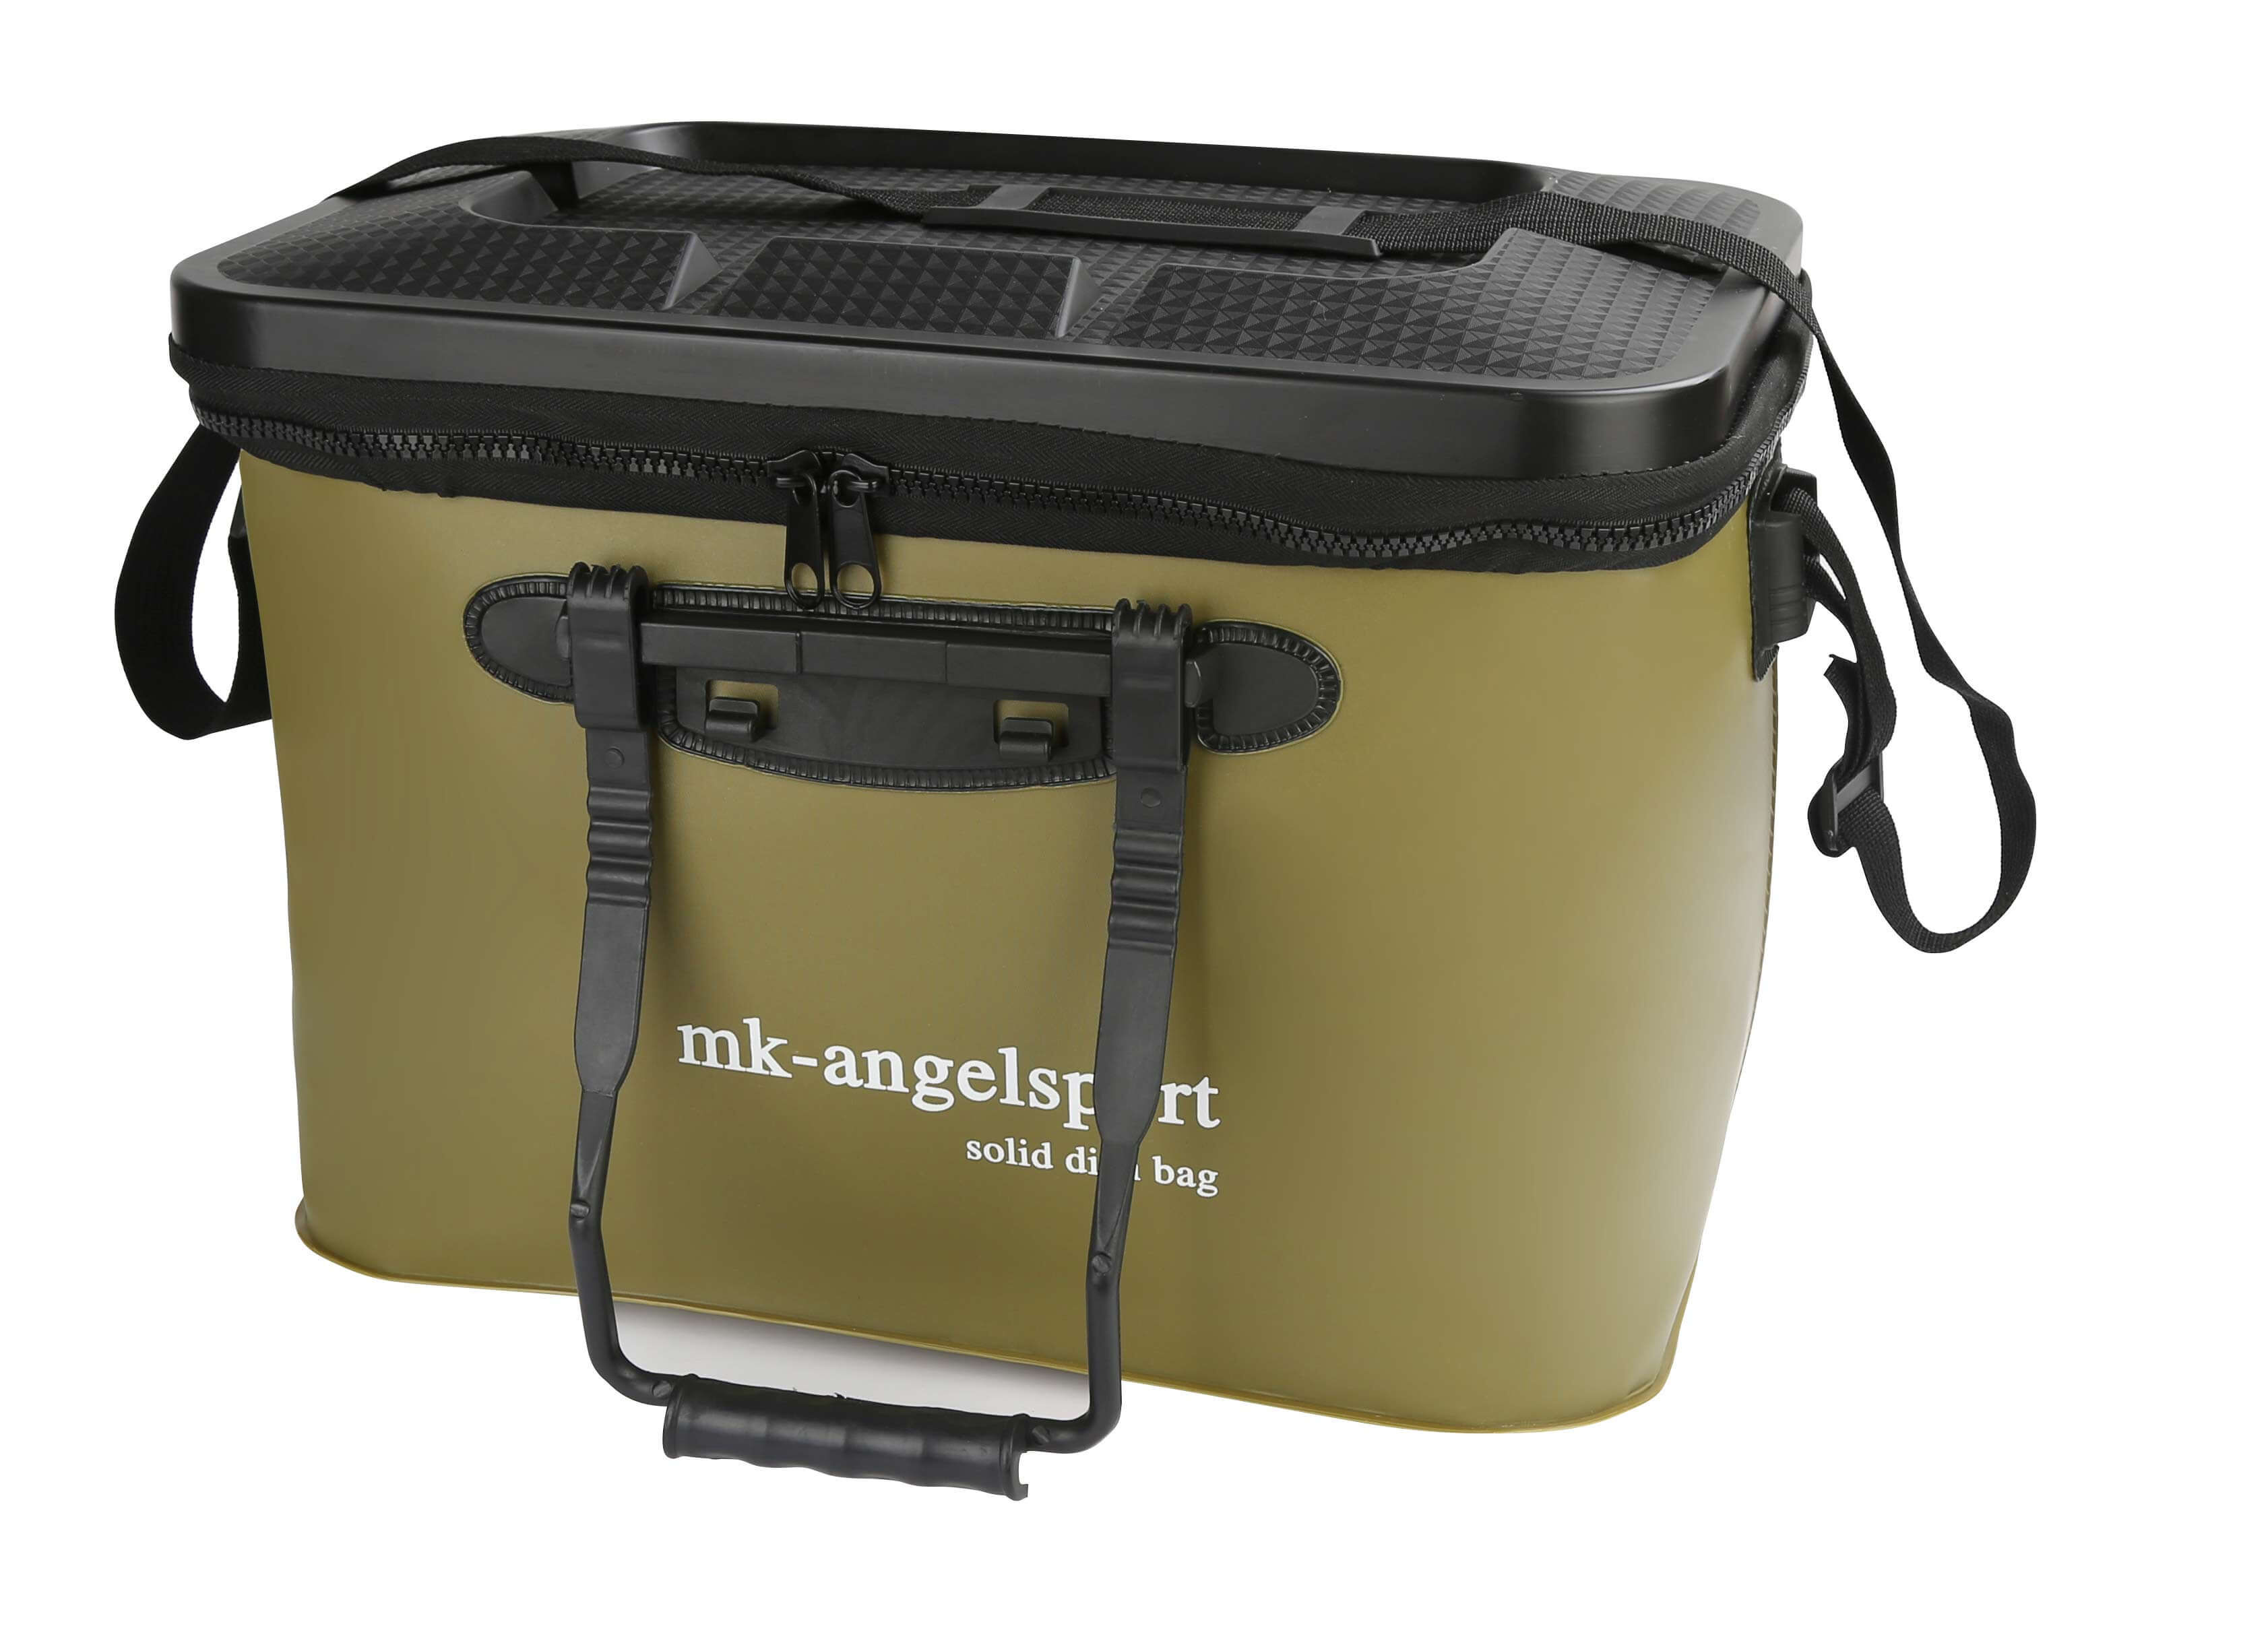 Die wasserdichte Camping-Tasche kann optimal zur Aufbewahrung für Camping-Geschirr genutzt werden.